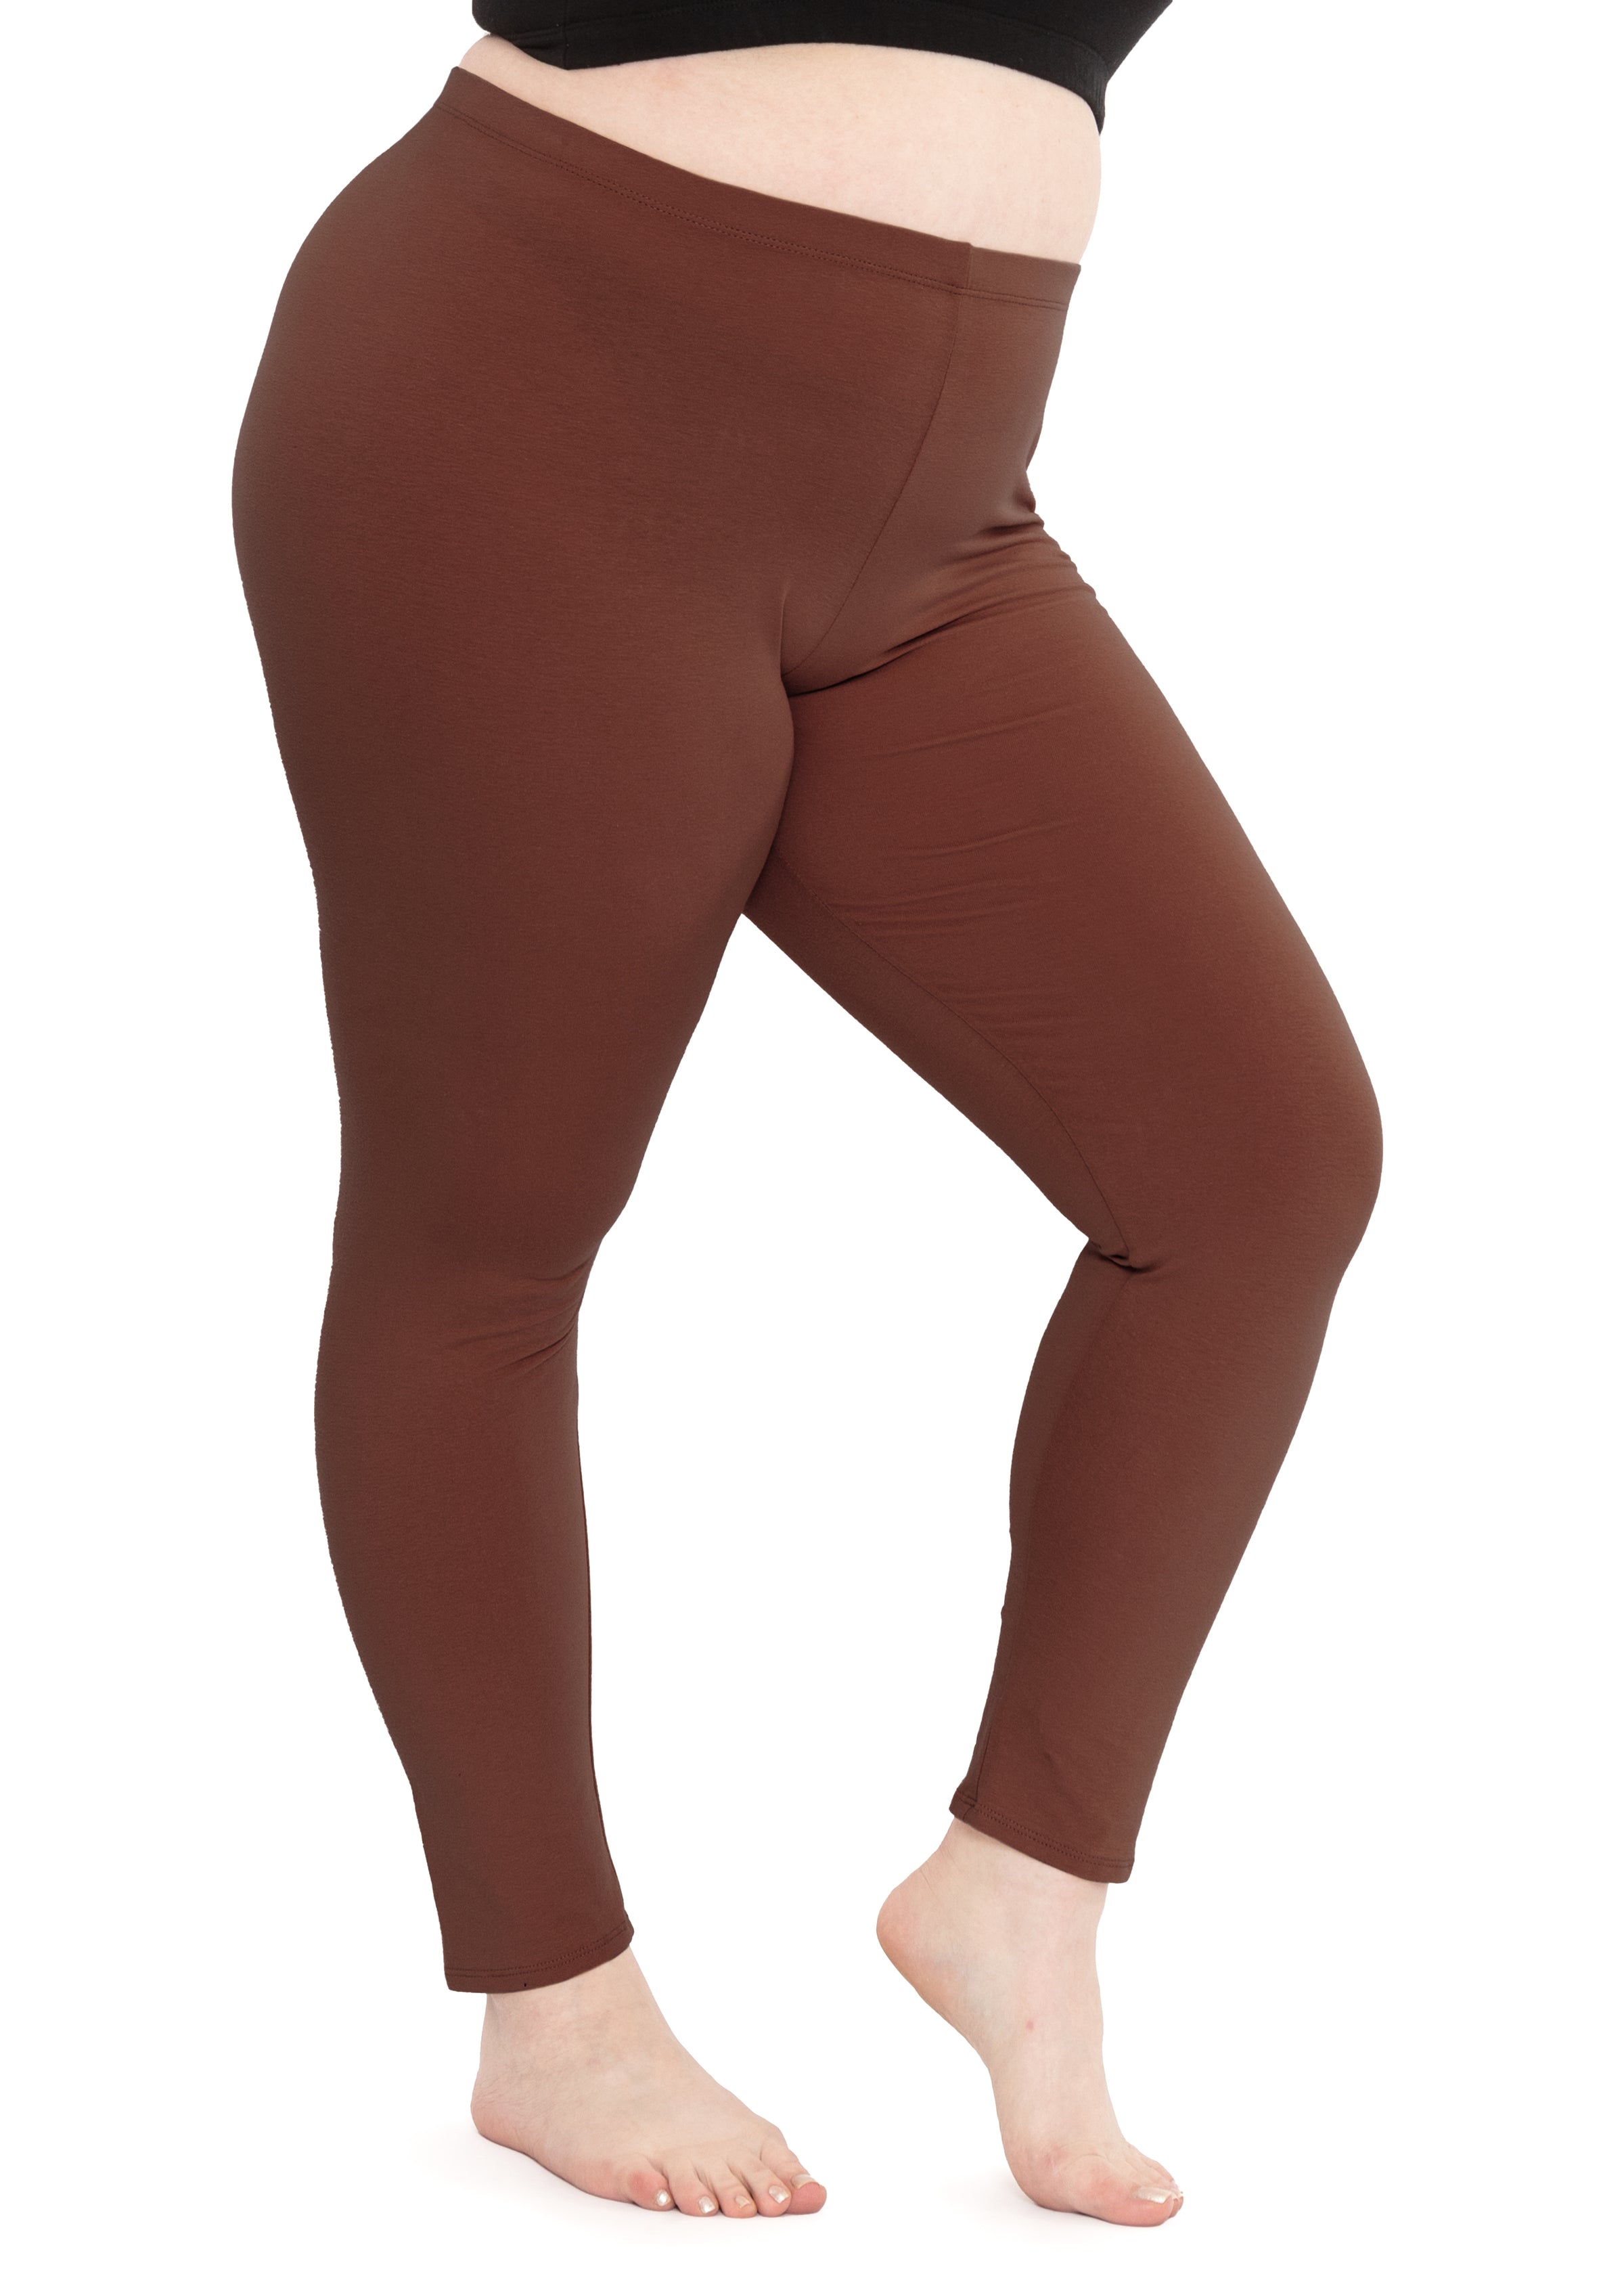 TIYOMI Plus Size Women's Brown Leggings 2X Full Length Pants